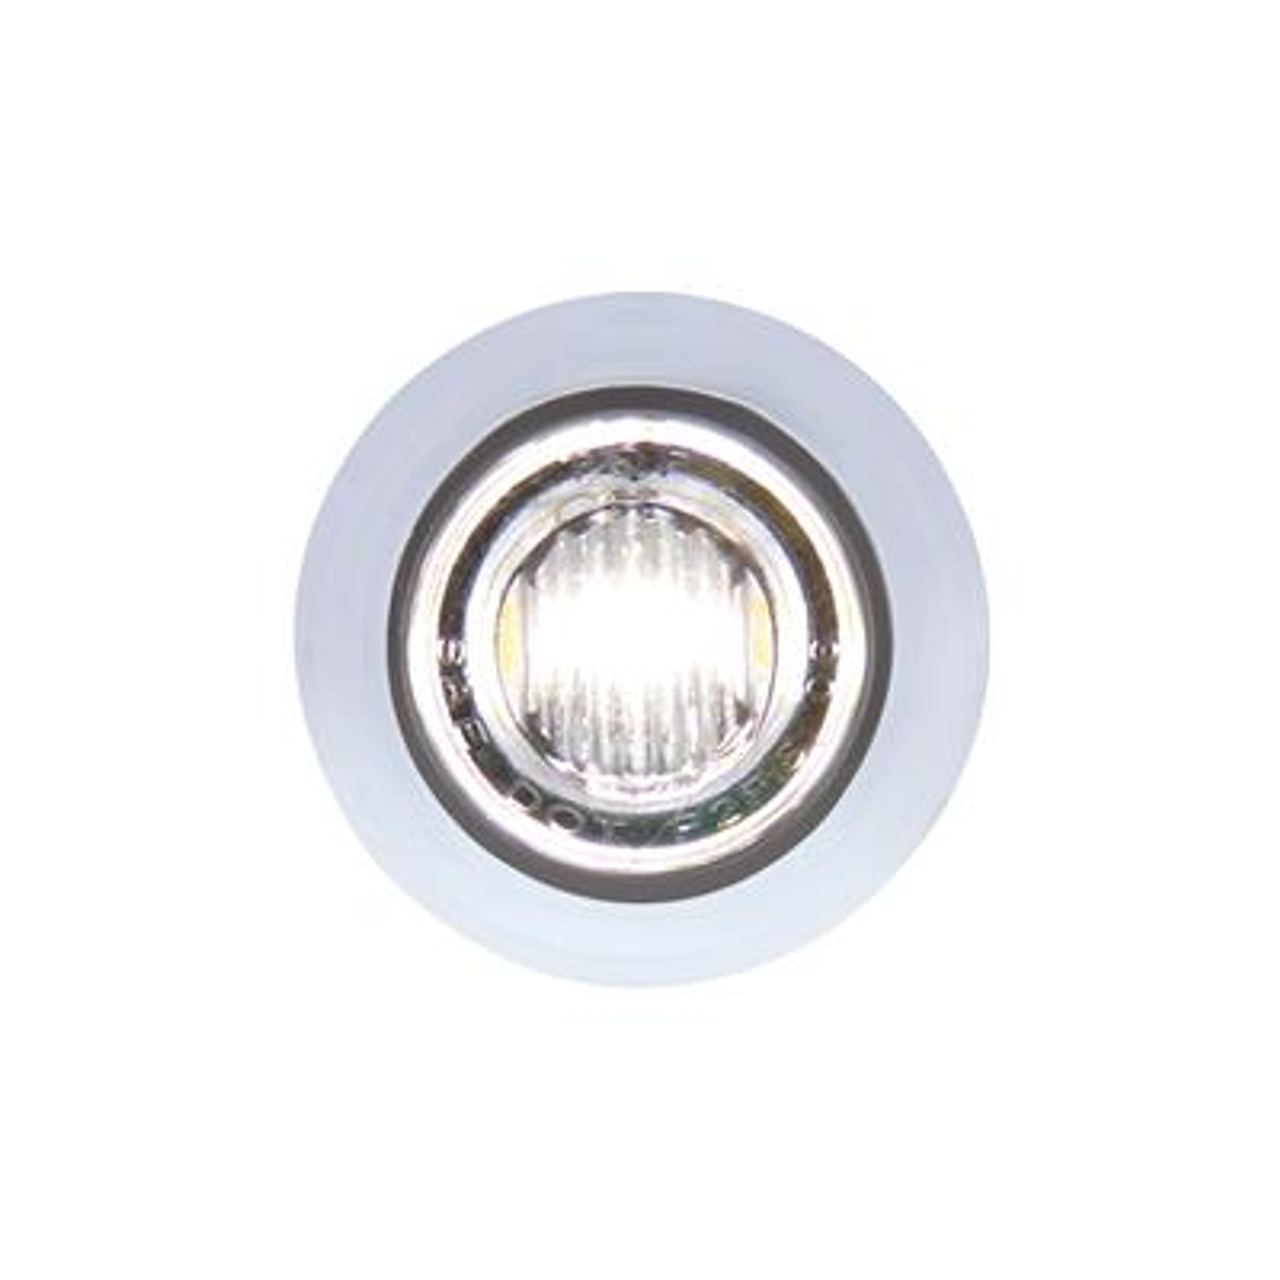 3 LED Mini Double Fury (Clearance/Marker) - Amber LED/White LED